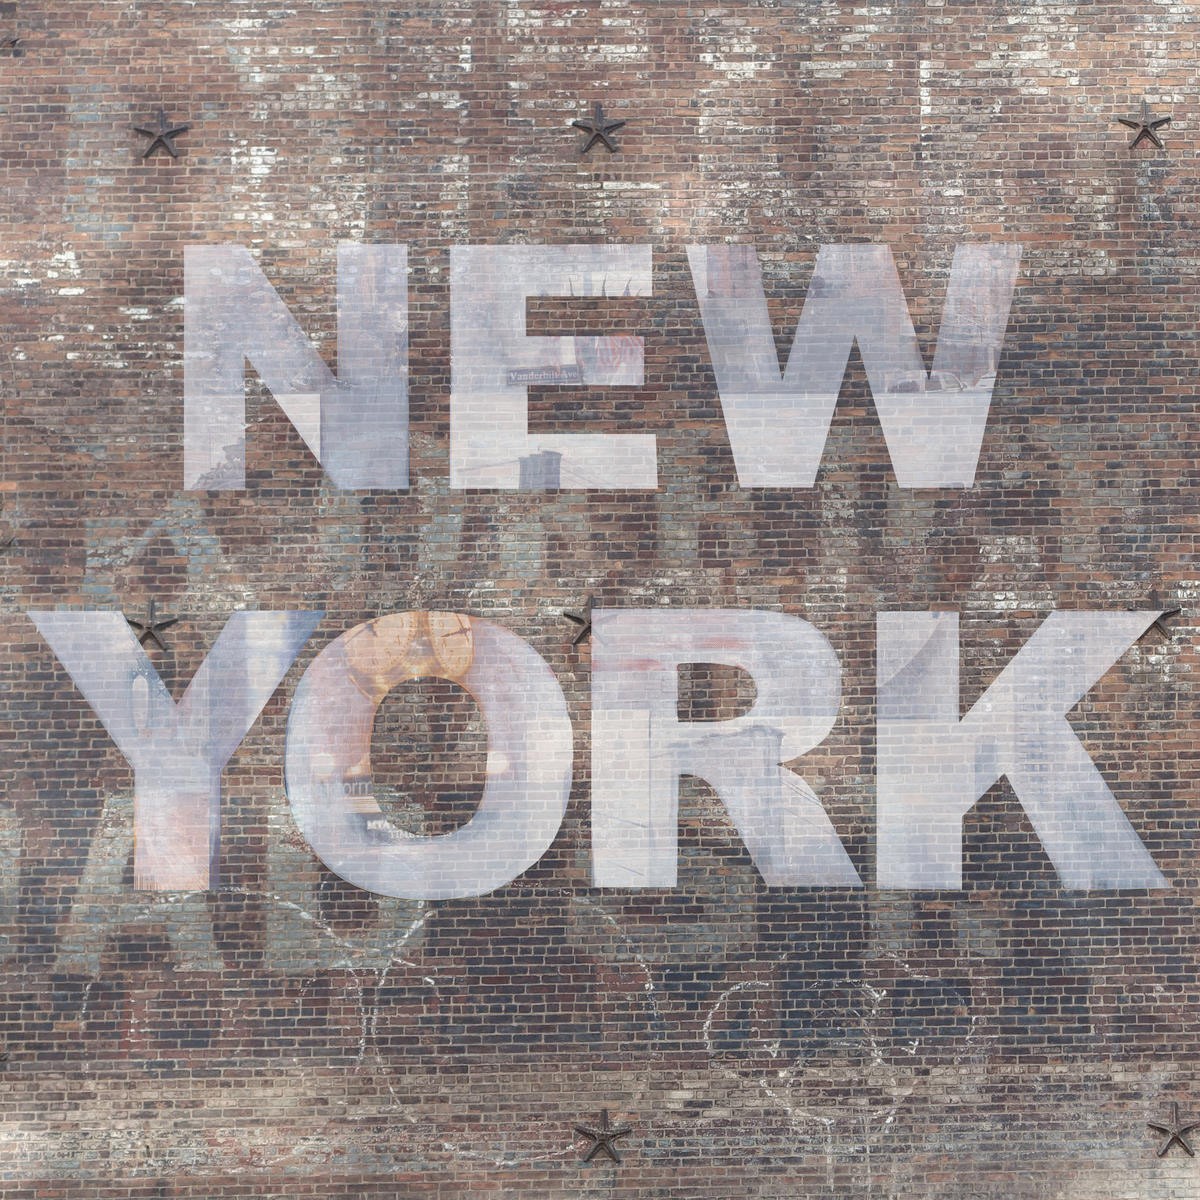 Renate Holzner, New York Collage 1 (New York, Typografie, Mauer, Ziegelmauer, Grafities, Fotokunst, Wunschgröße, Wohnzimmer, Treppenhaus, modern, Grafik, bunt)